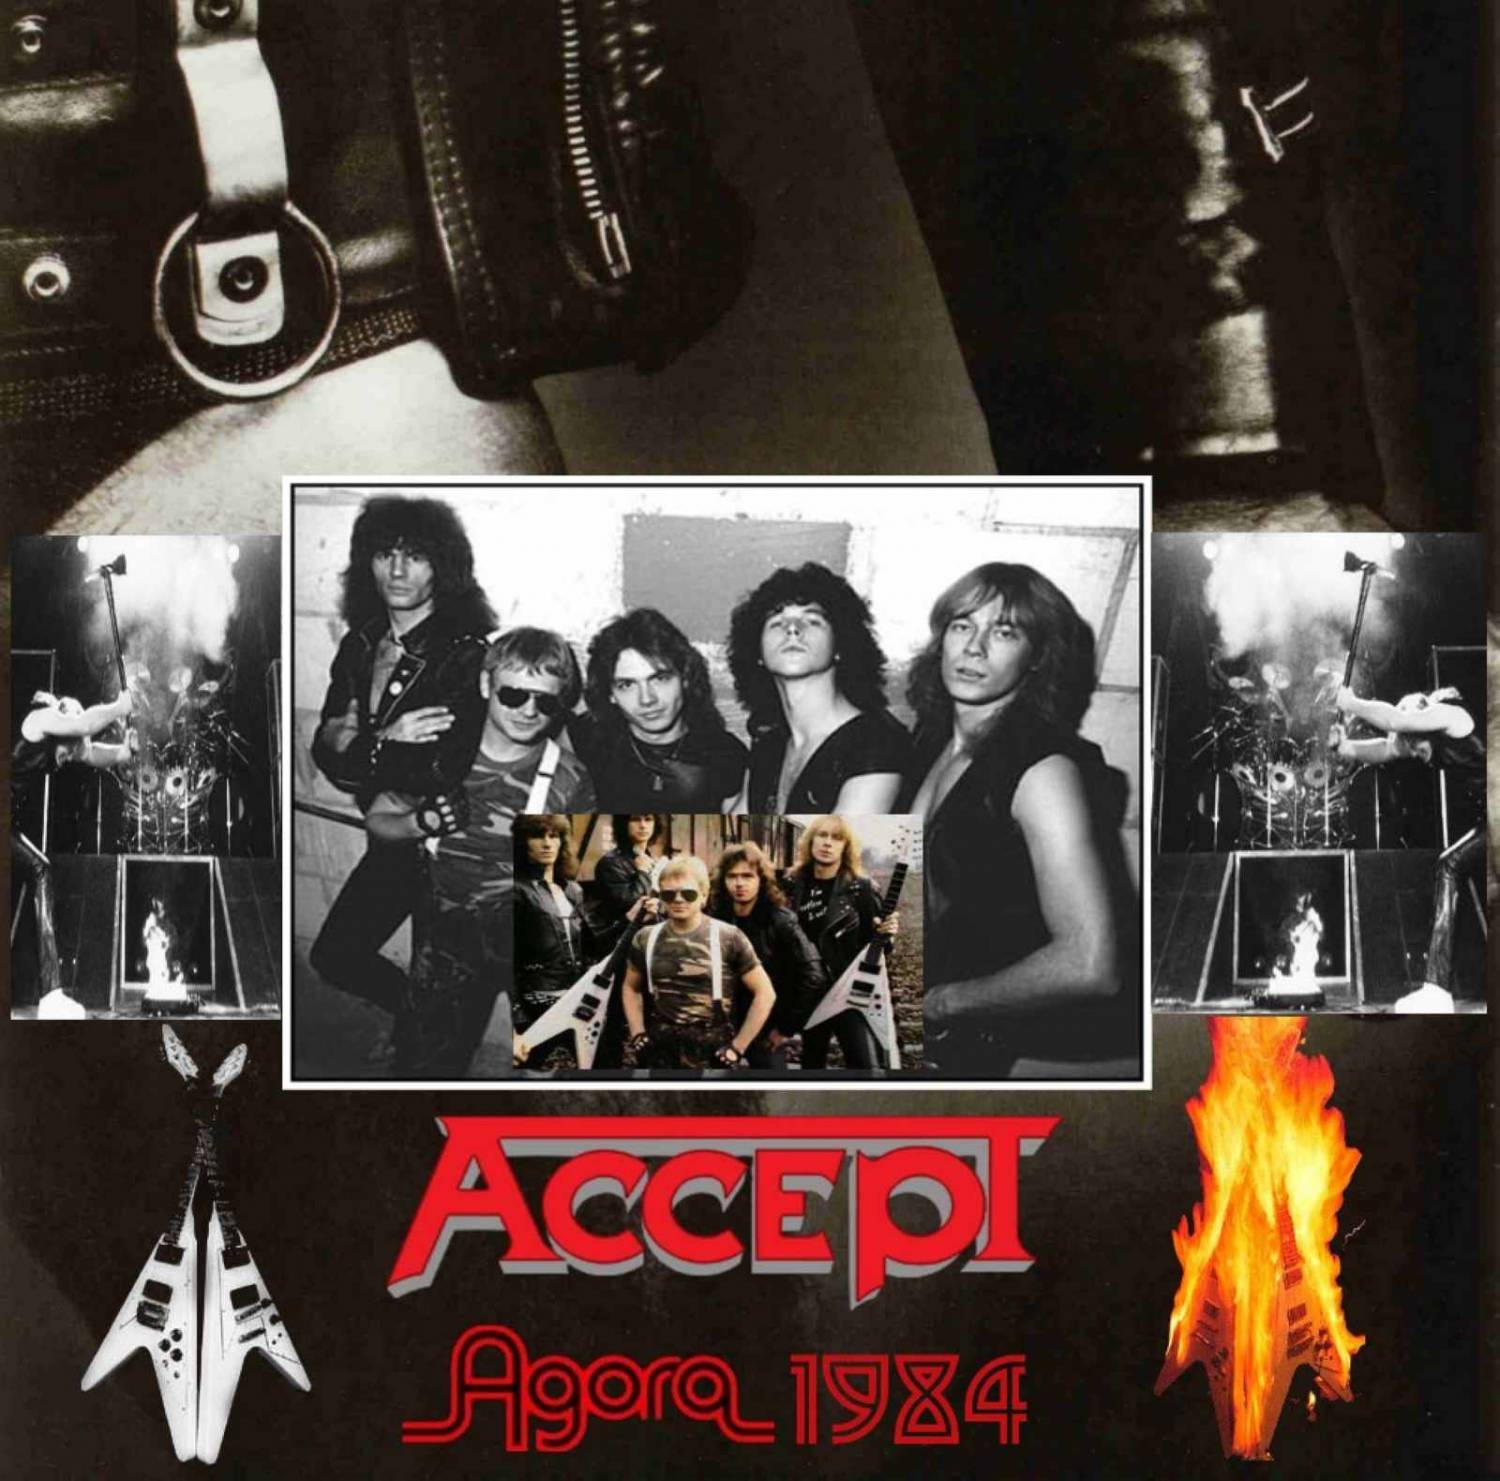  Accept - Live At The Agora (1984) Live Bootleg